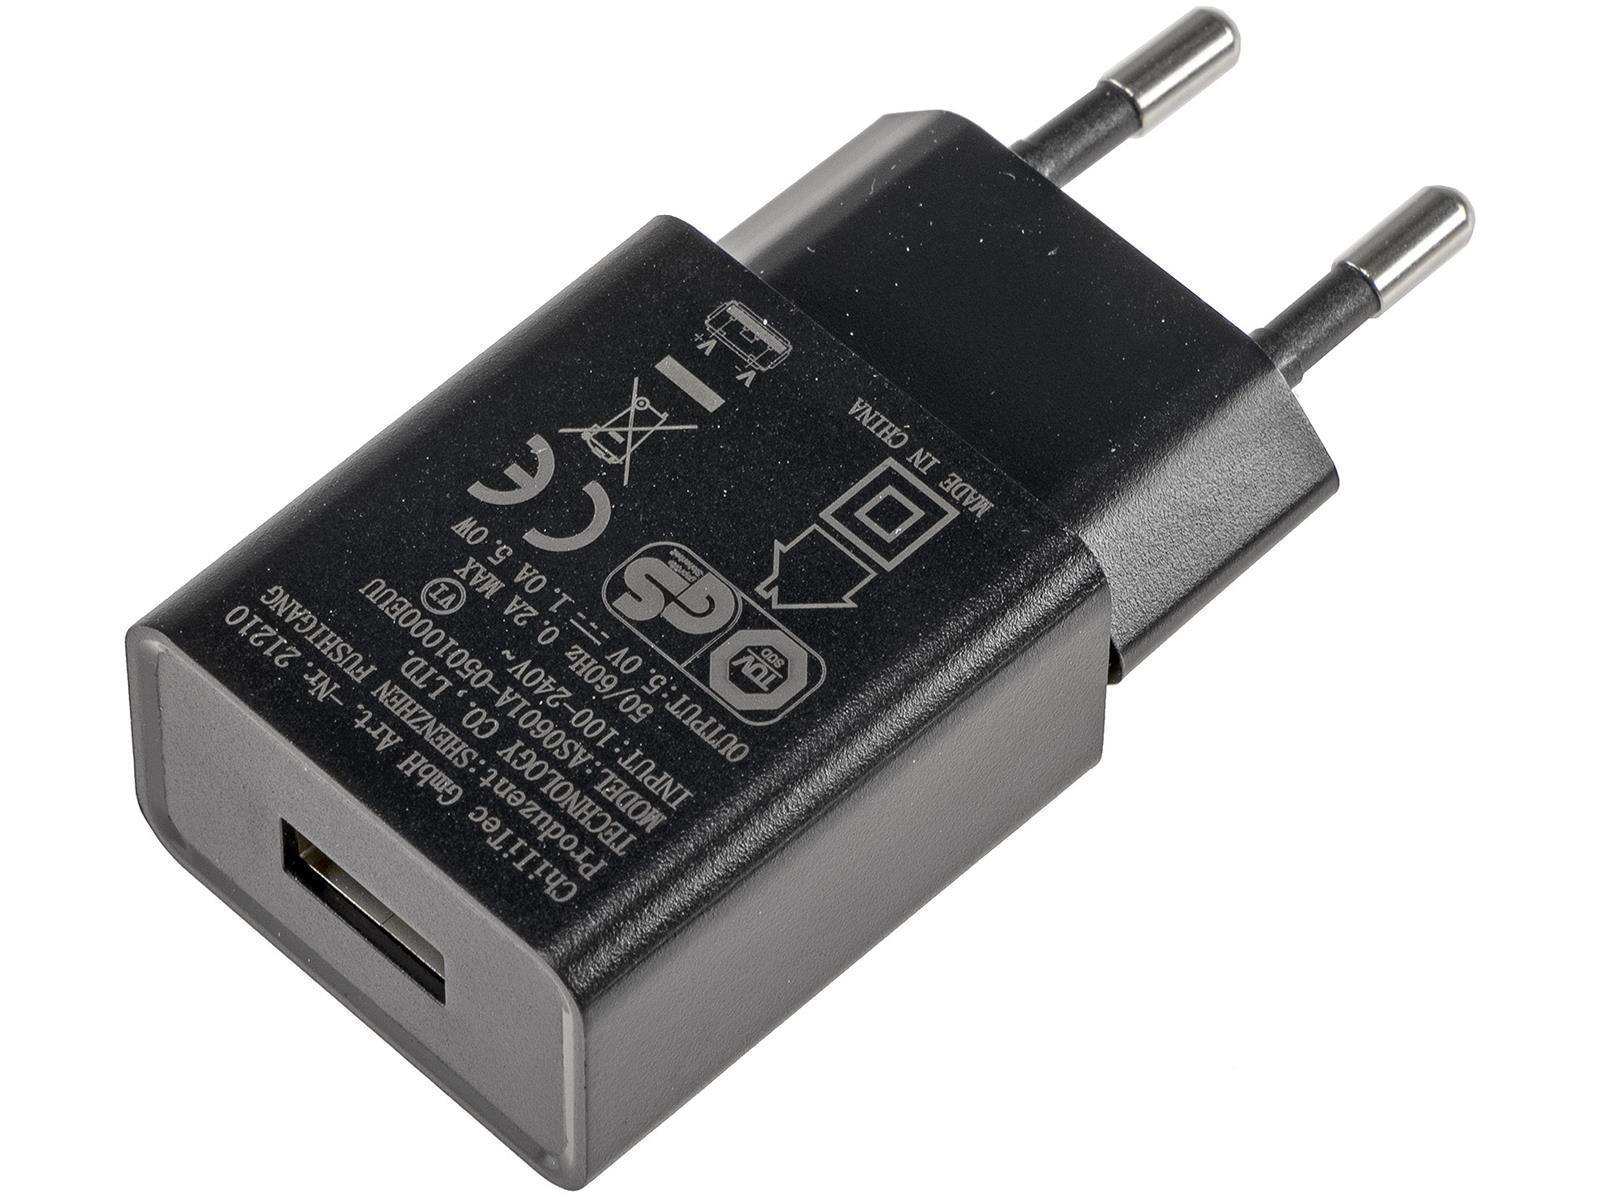 Stecker-Netzteil mit USB "CTN-0510"Ein 110-240V~, Aus 5V=, 1A, 5W